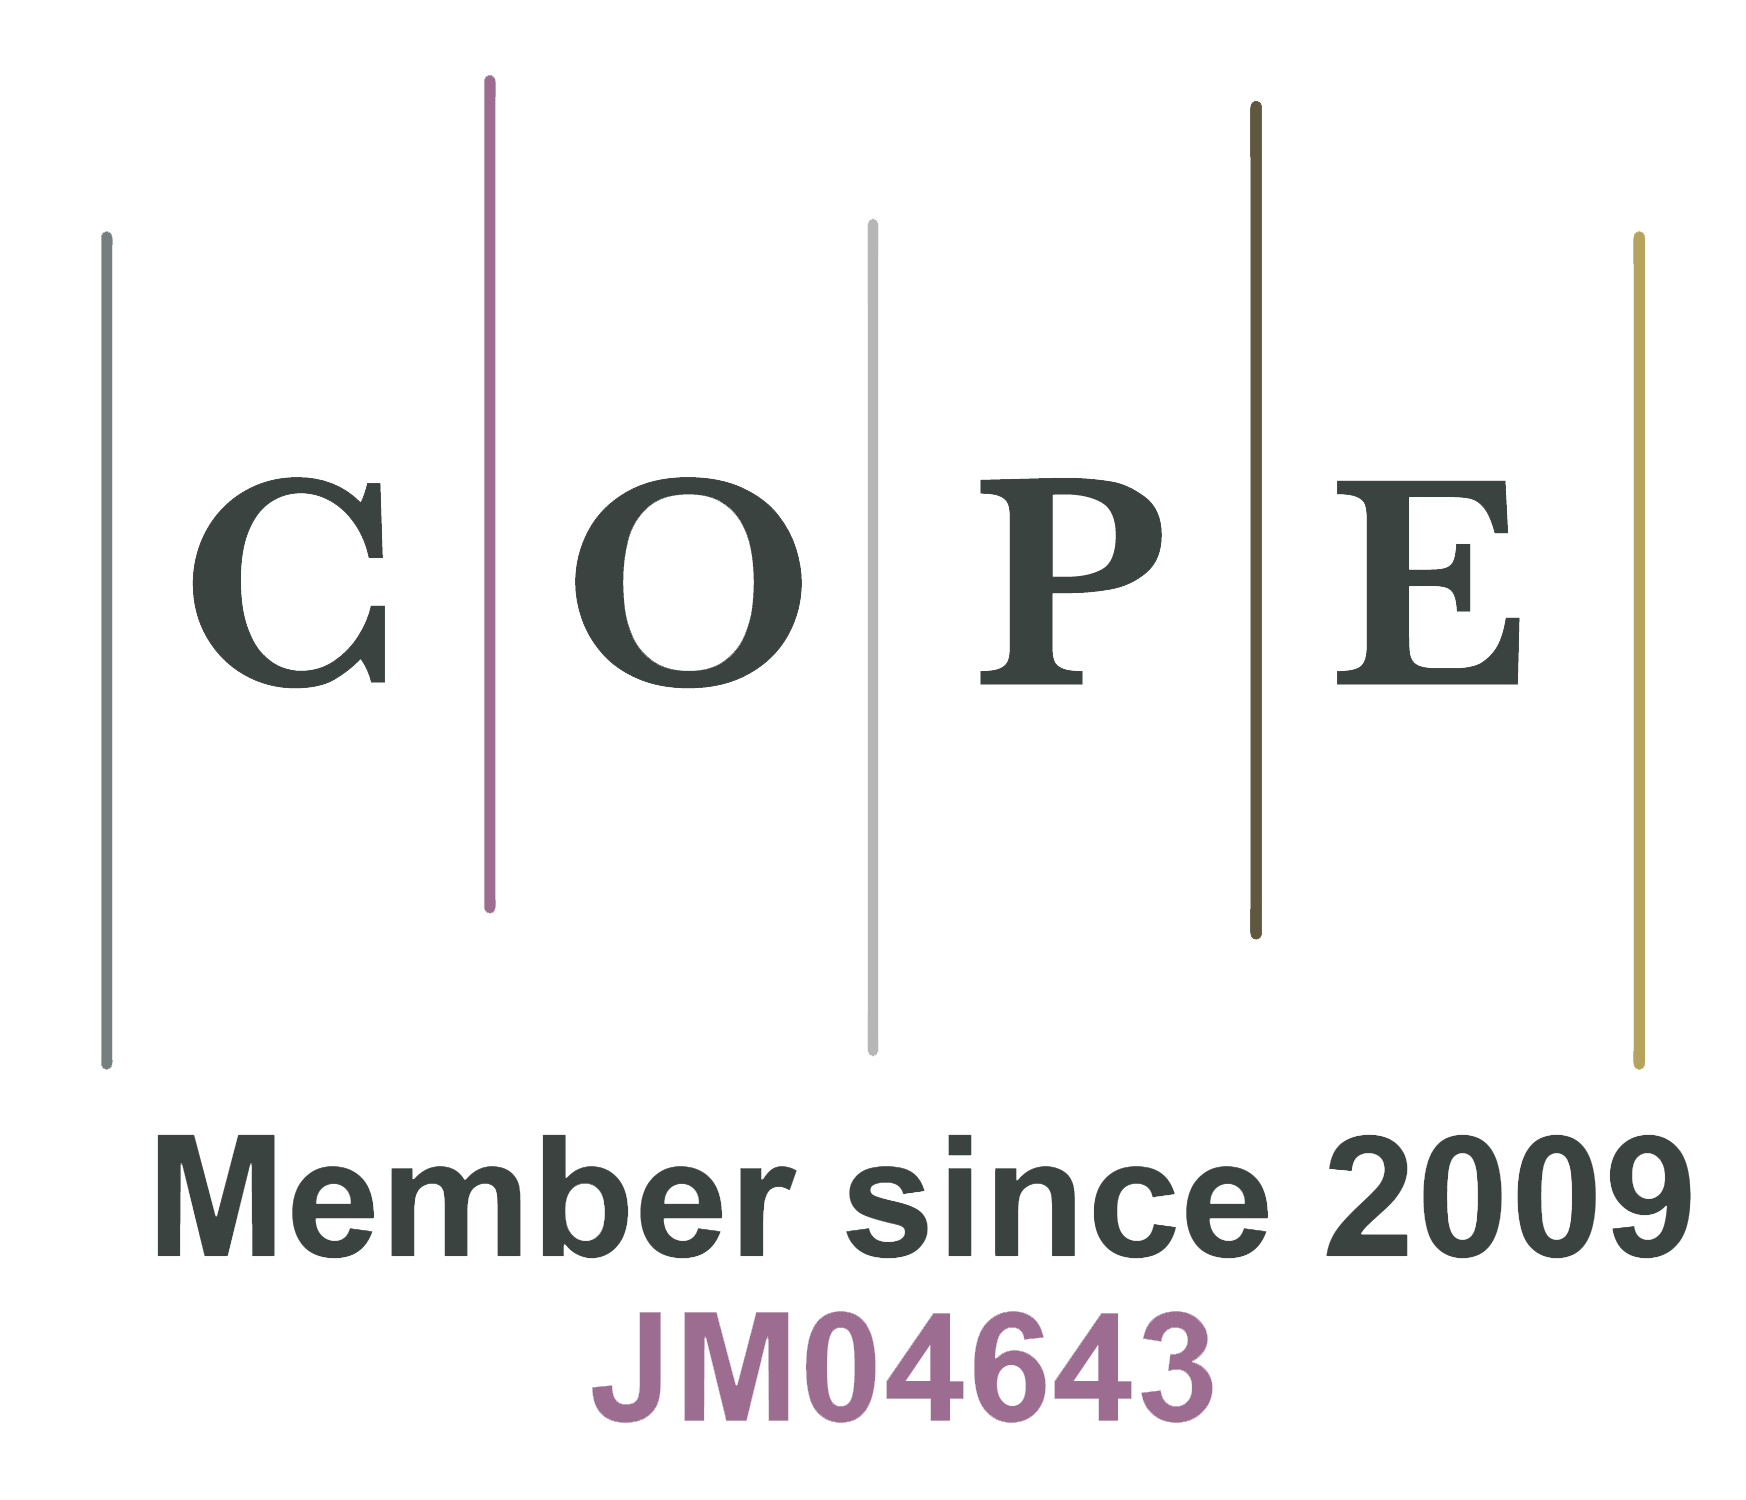 自2009年JM04643以来应对会员